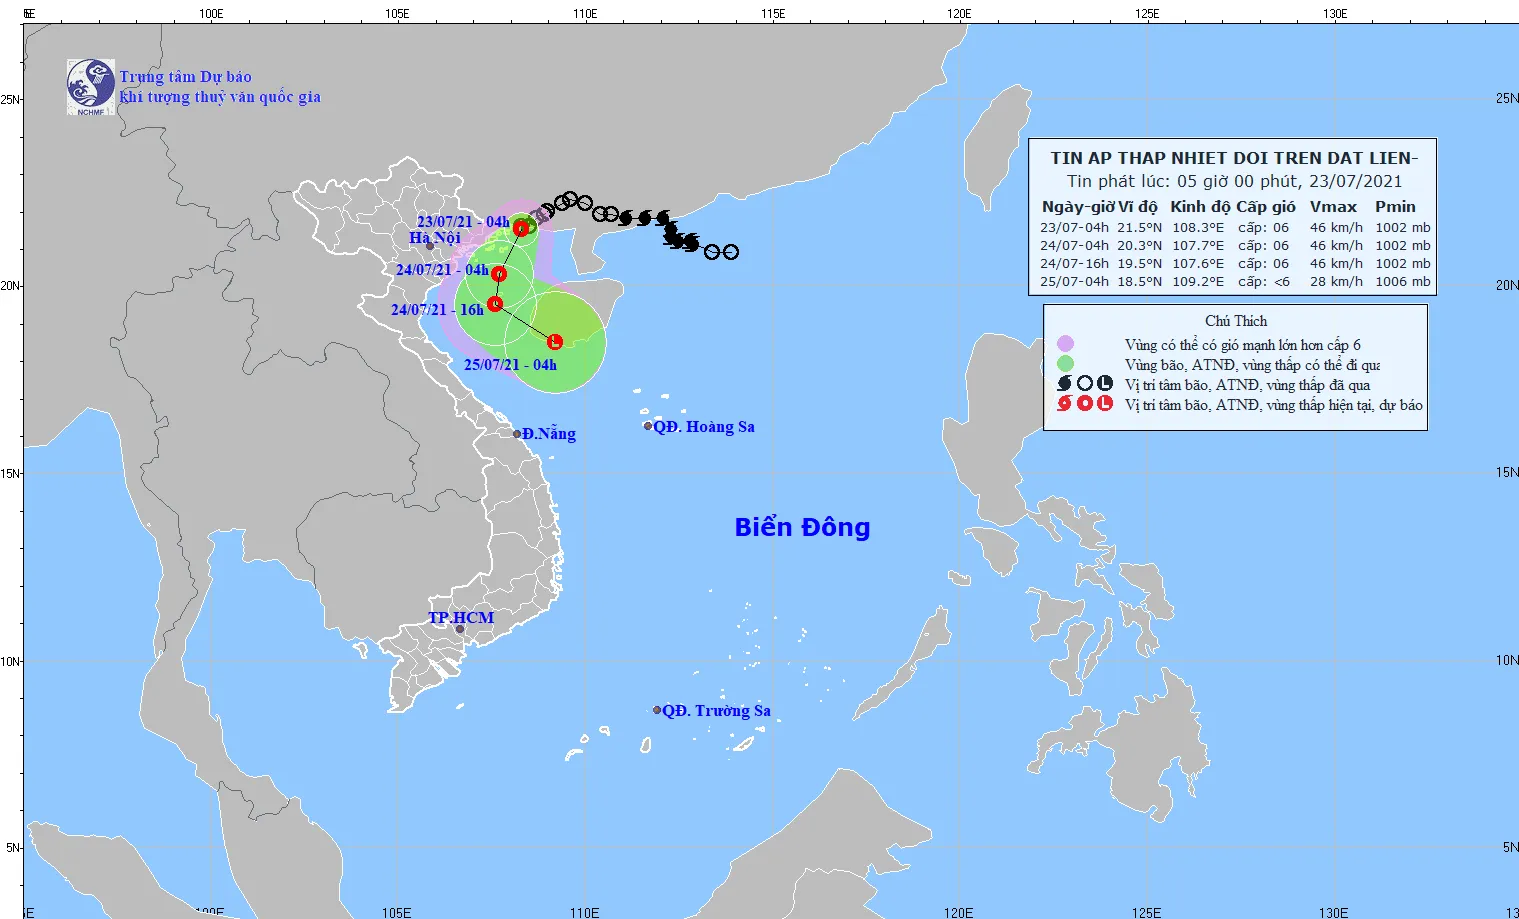 Áp thấp nhiệt đới cách Móng Cái (Quảng Ninh) khoảng 40km về phía Đông 1